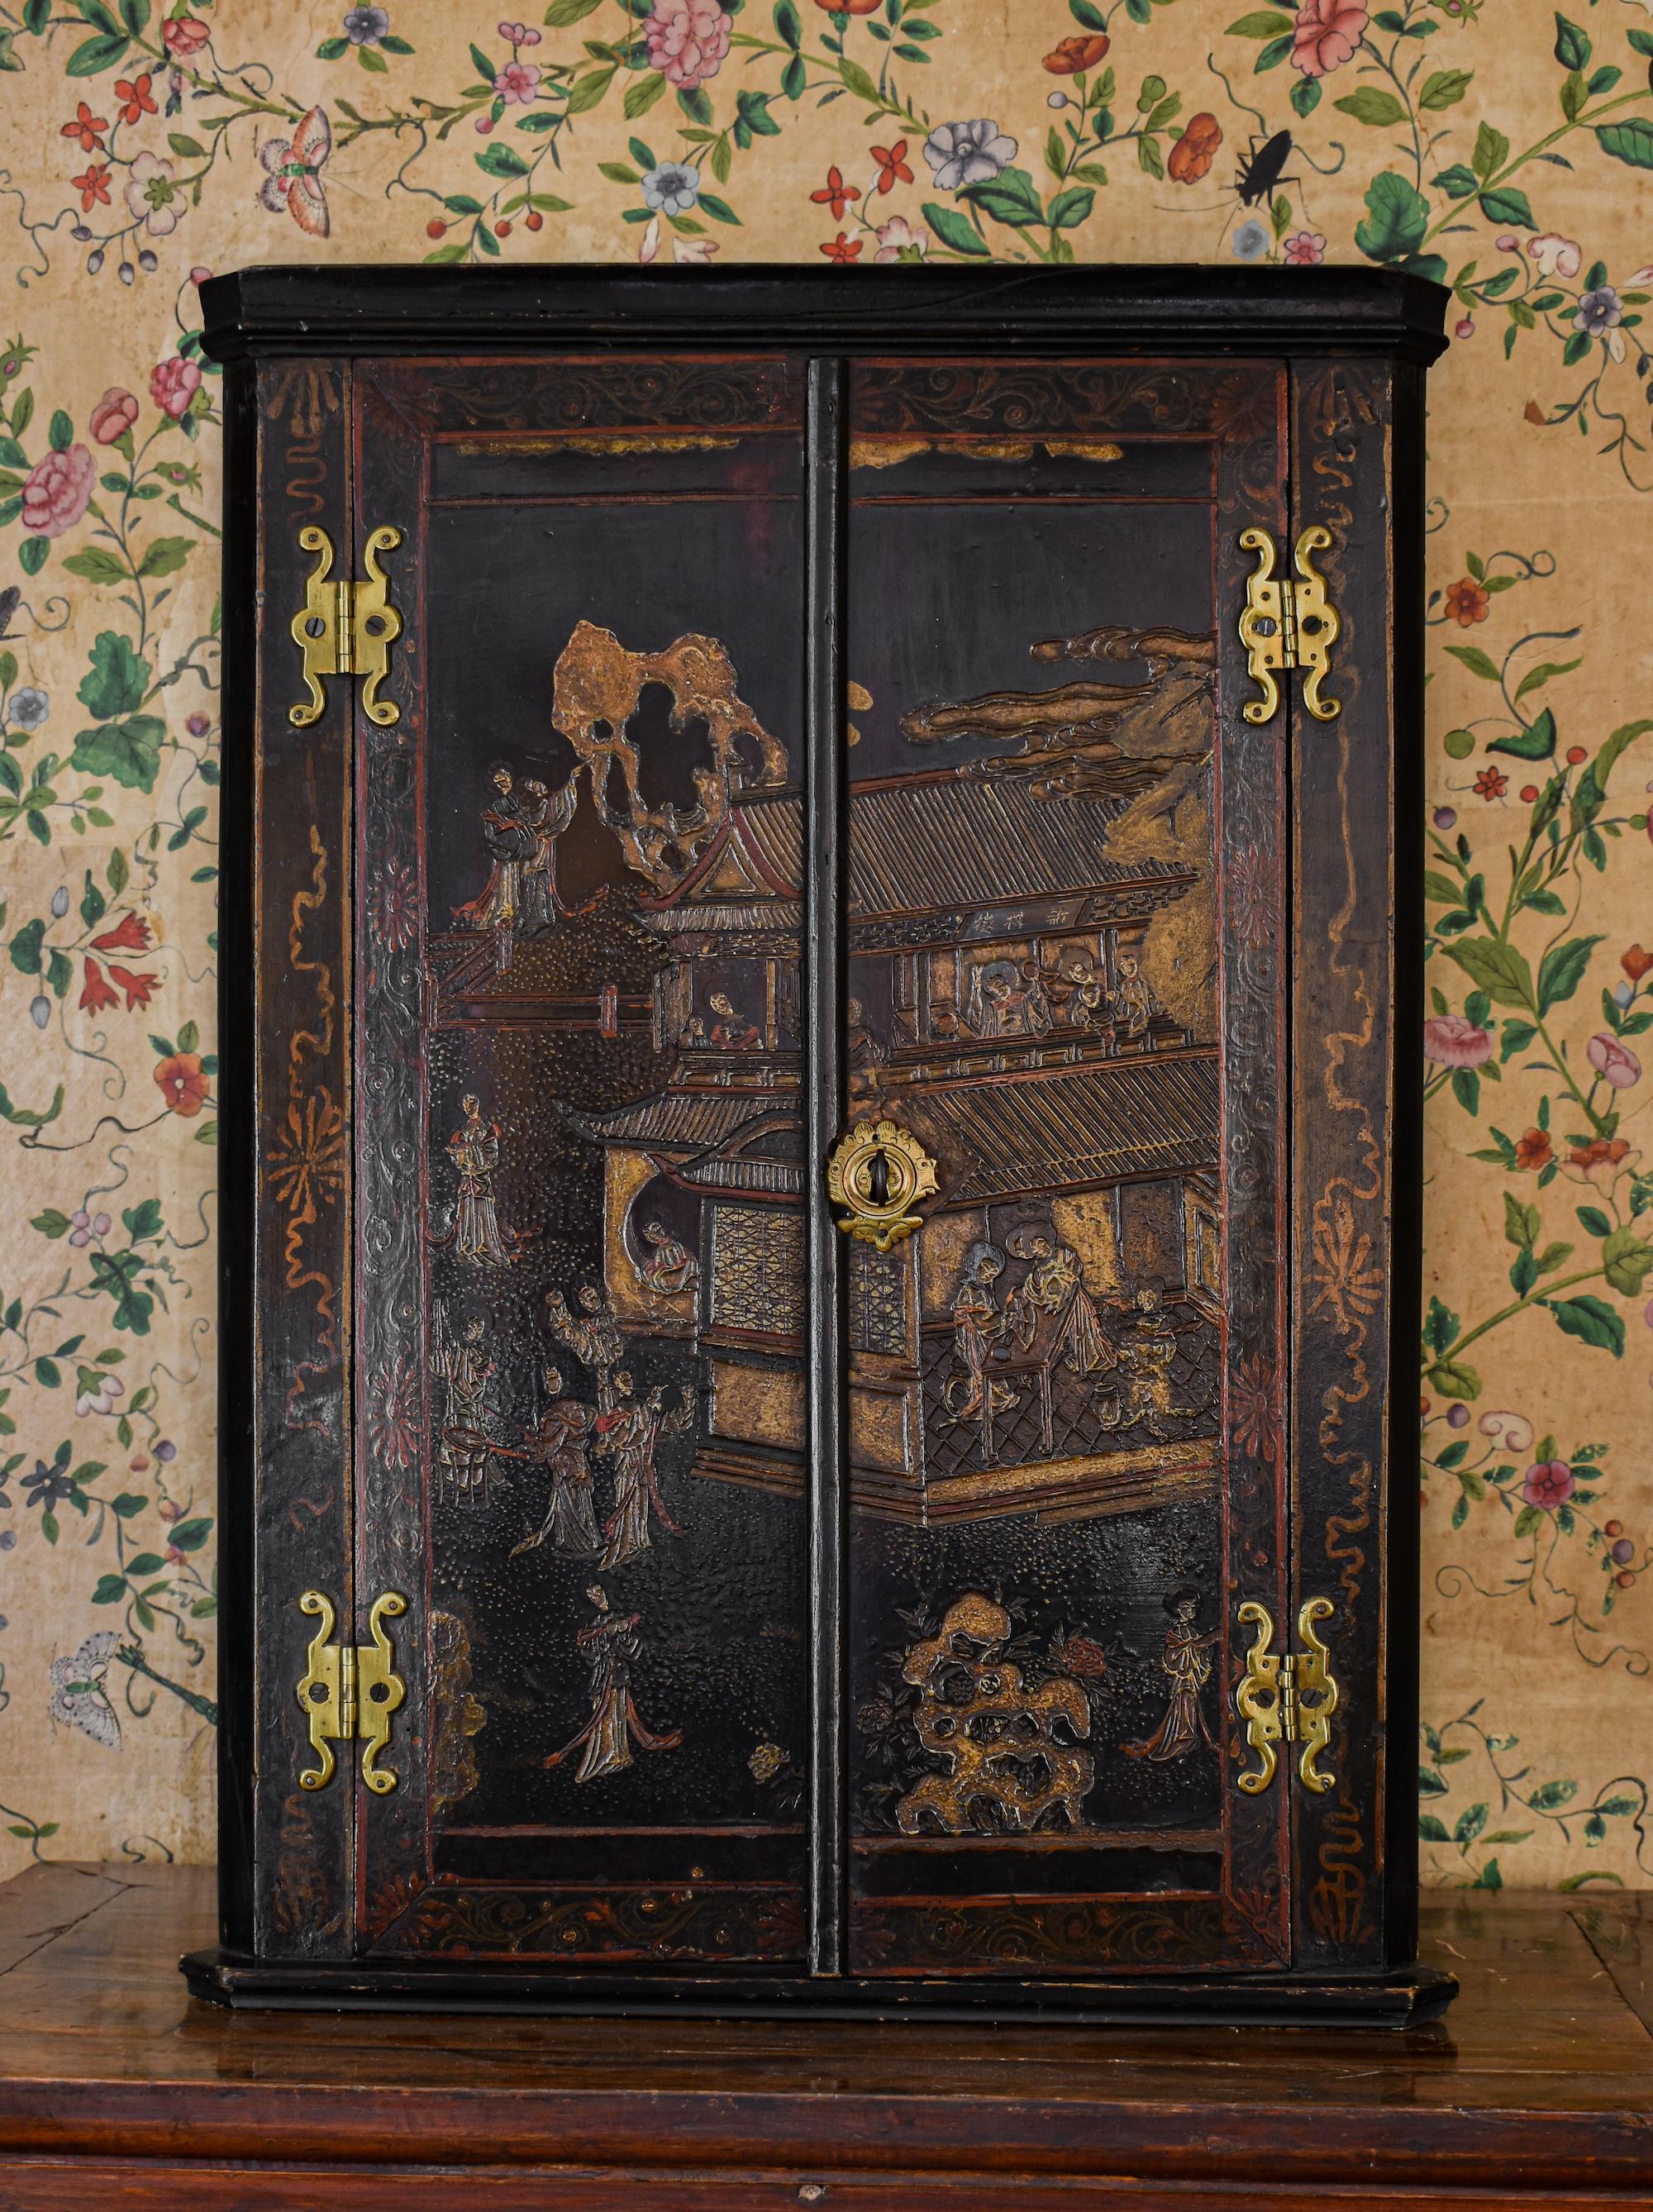 Armoire ou cabinet d'angle en laque de Coromandel du début du XVIIIe siècle.

Il s'agit d'un travail de laque de Coromandel (décoration incisée) rare et de haute qualité, à ne pas confondre avec les versions anglaises habituelles en japanis.

Il